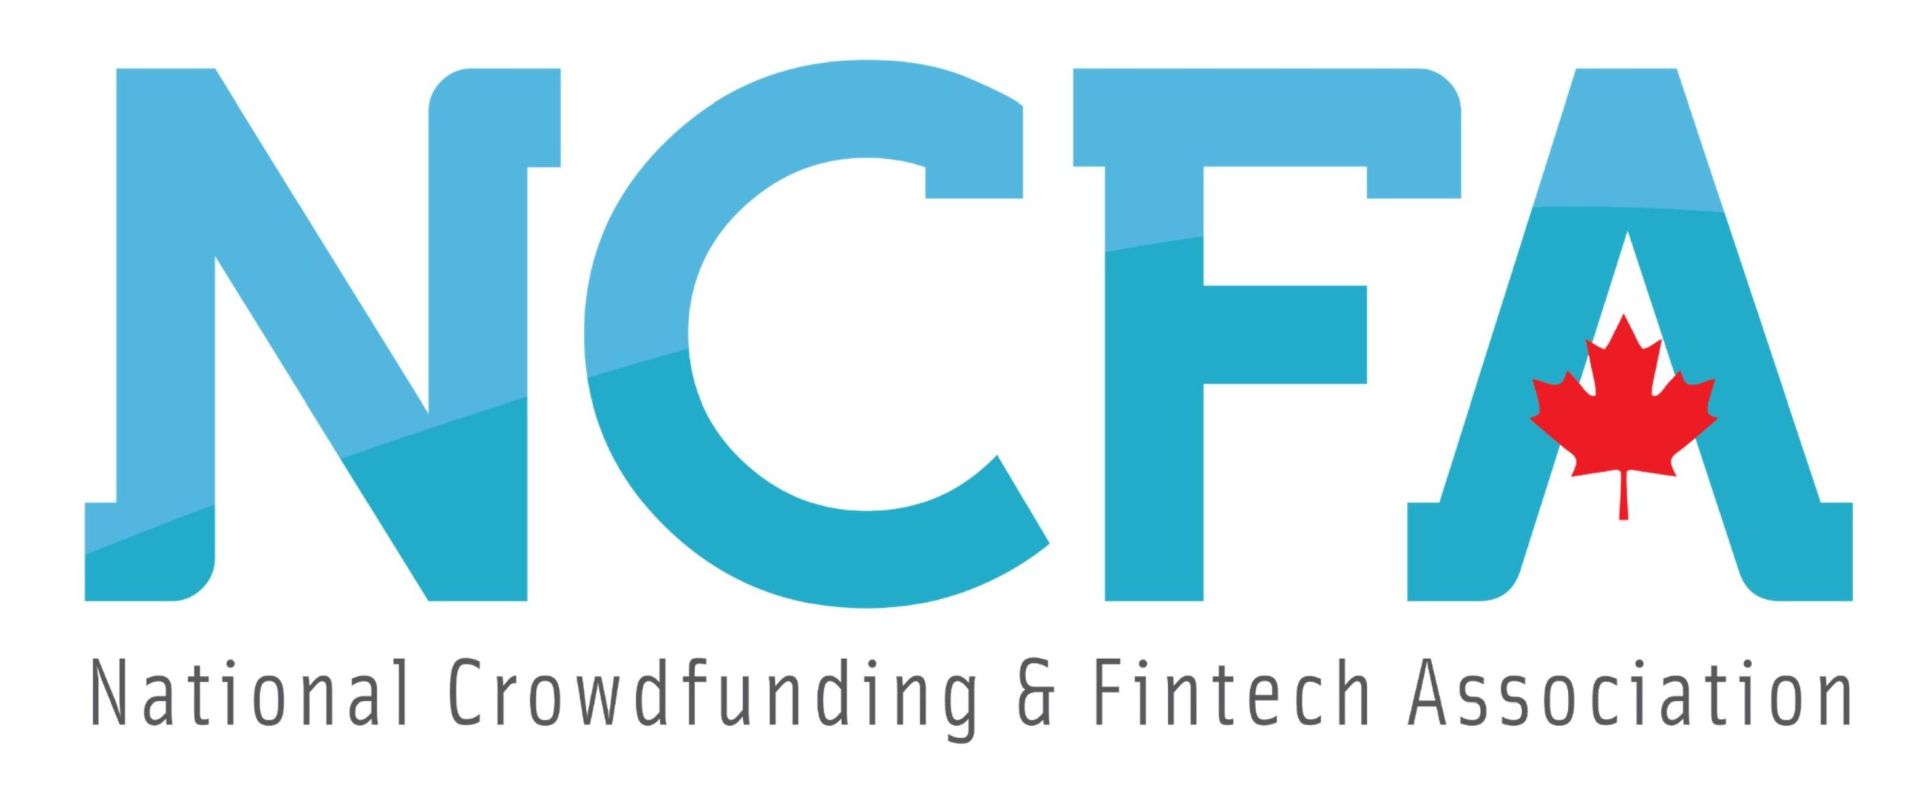 31 مايو حدث NCFA الذي قدمه DIGTL: افتتاح شبكات التكنولوجيا المالية والتمويل الصيفي السابع للبيع الآن!